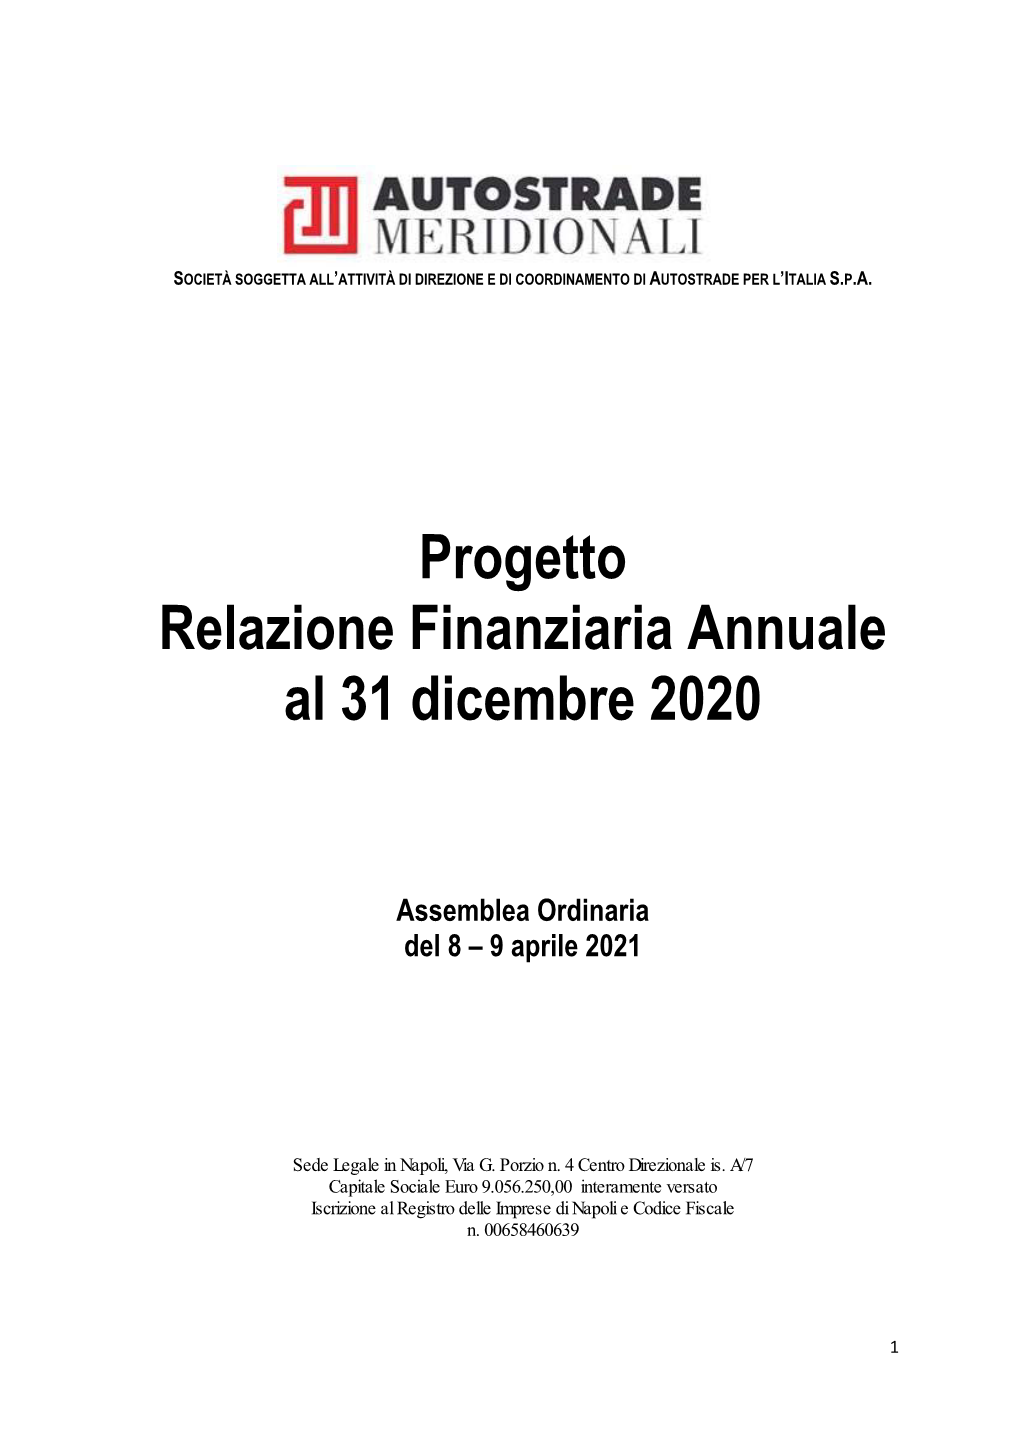 Progetto Relazione Finanziaria Annuale Al 31 Dicembre 2020